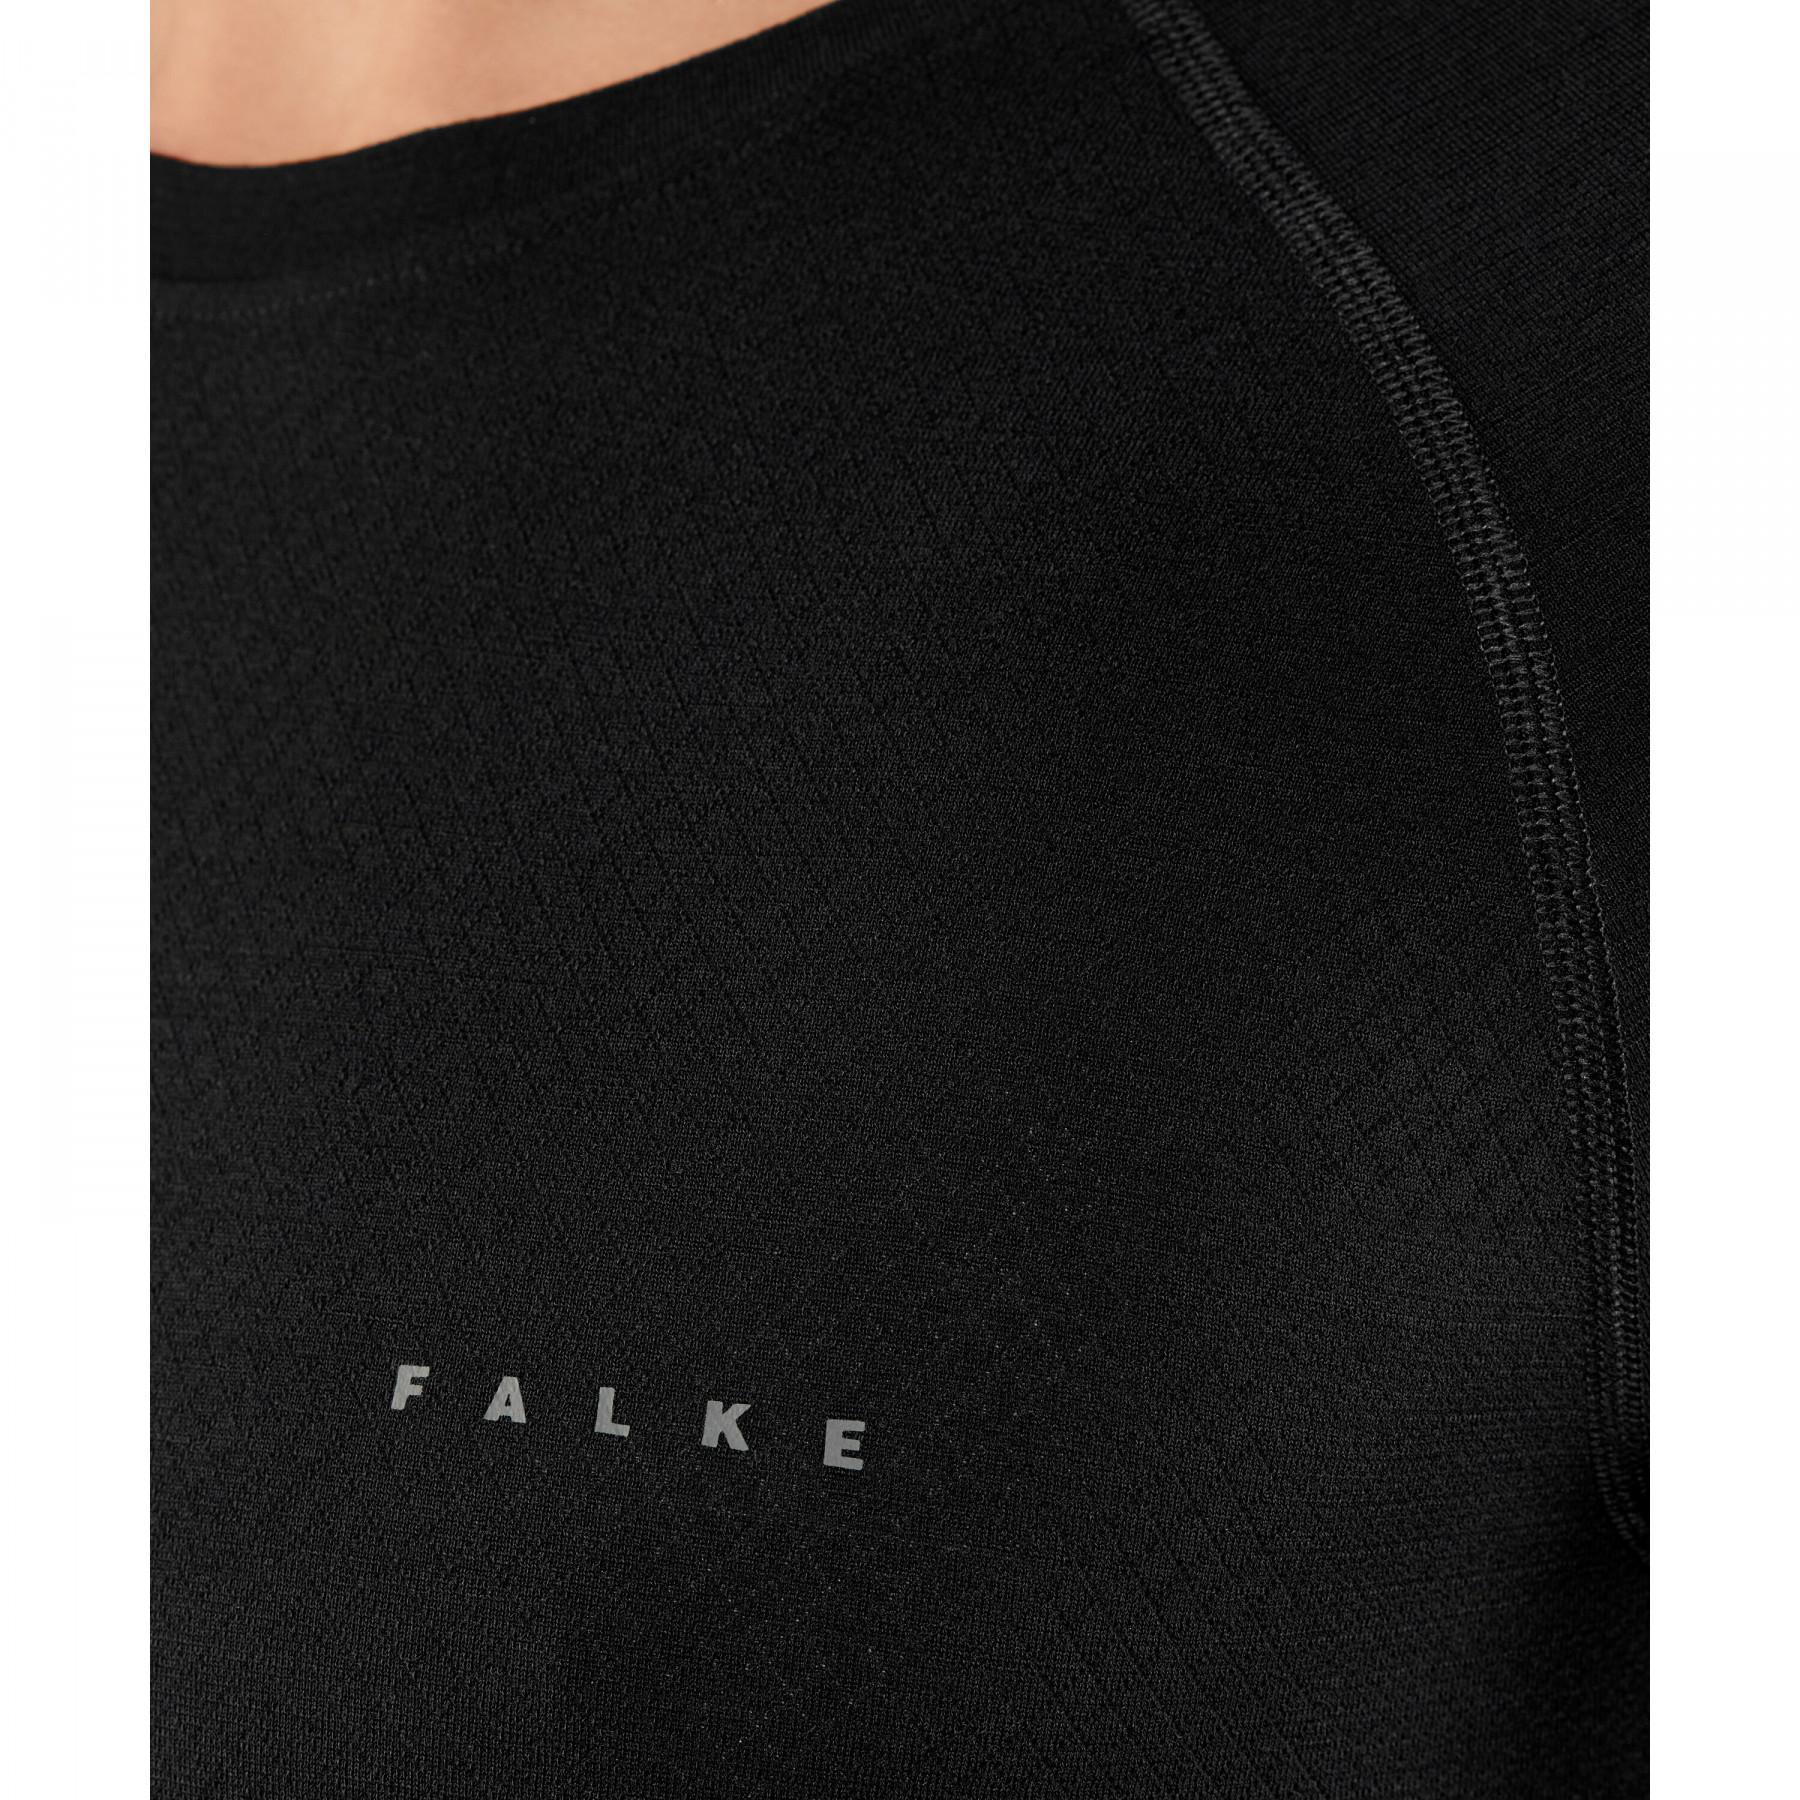 T-shirt Falke Wool-Tech Light uomo